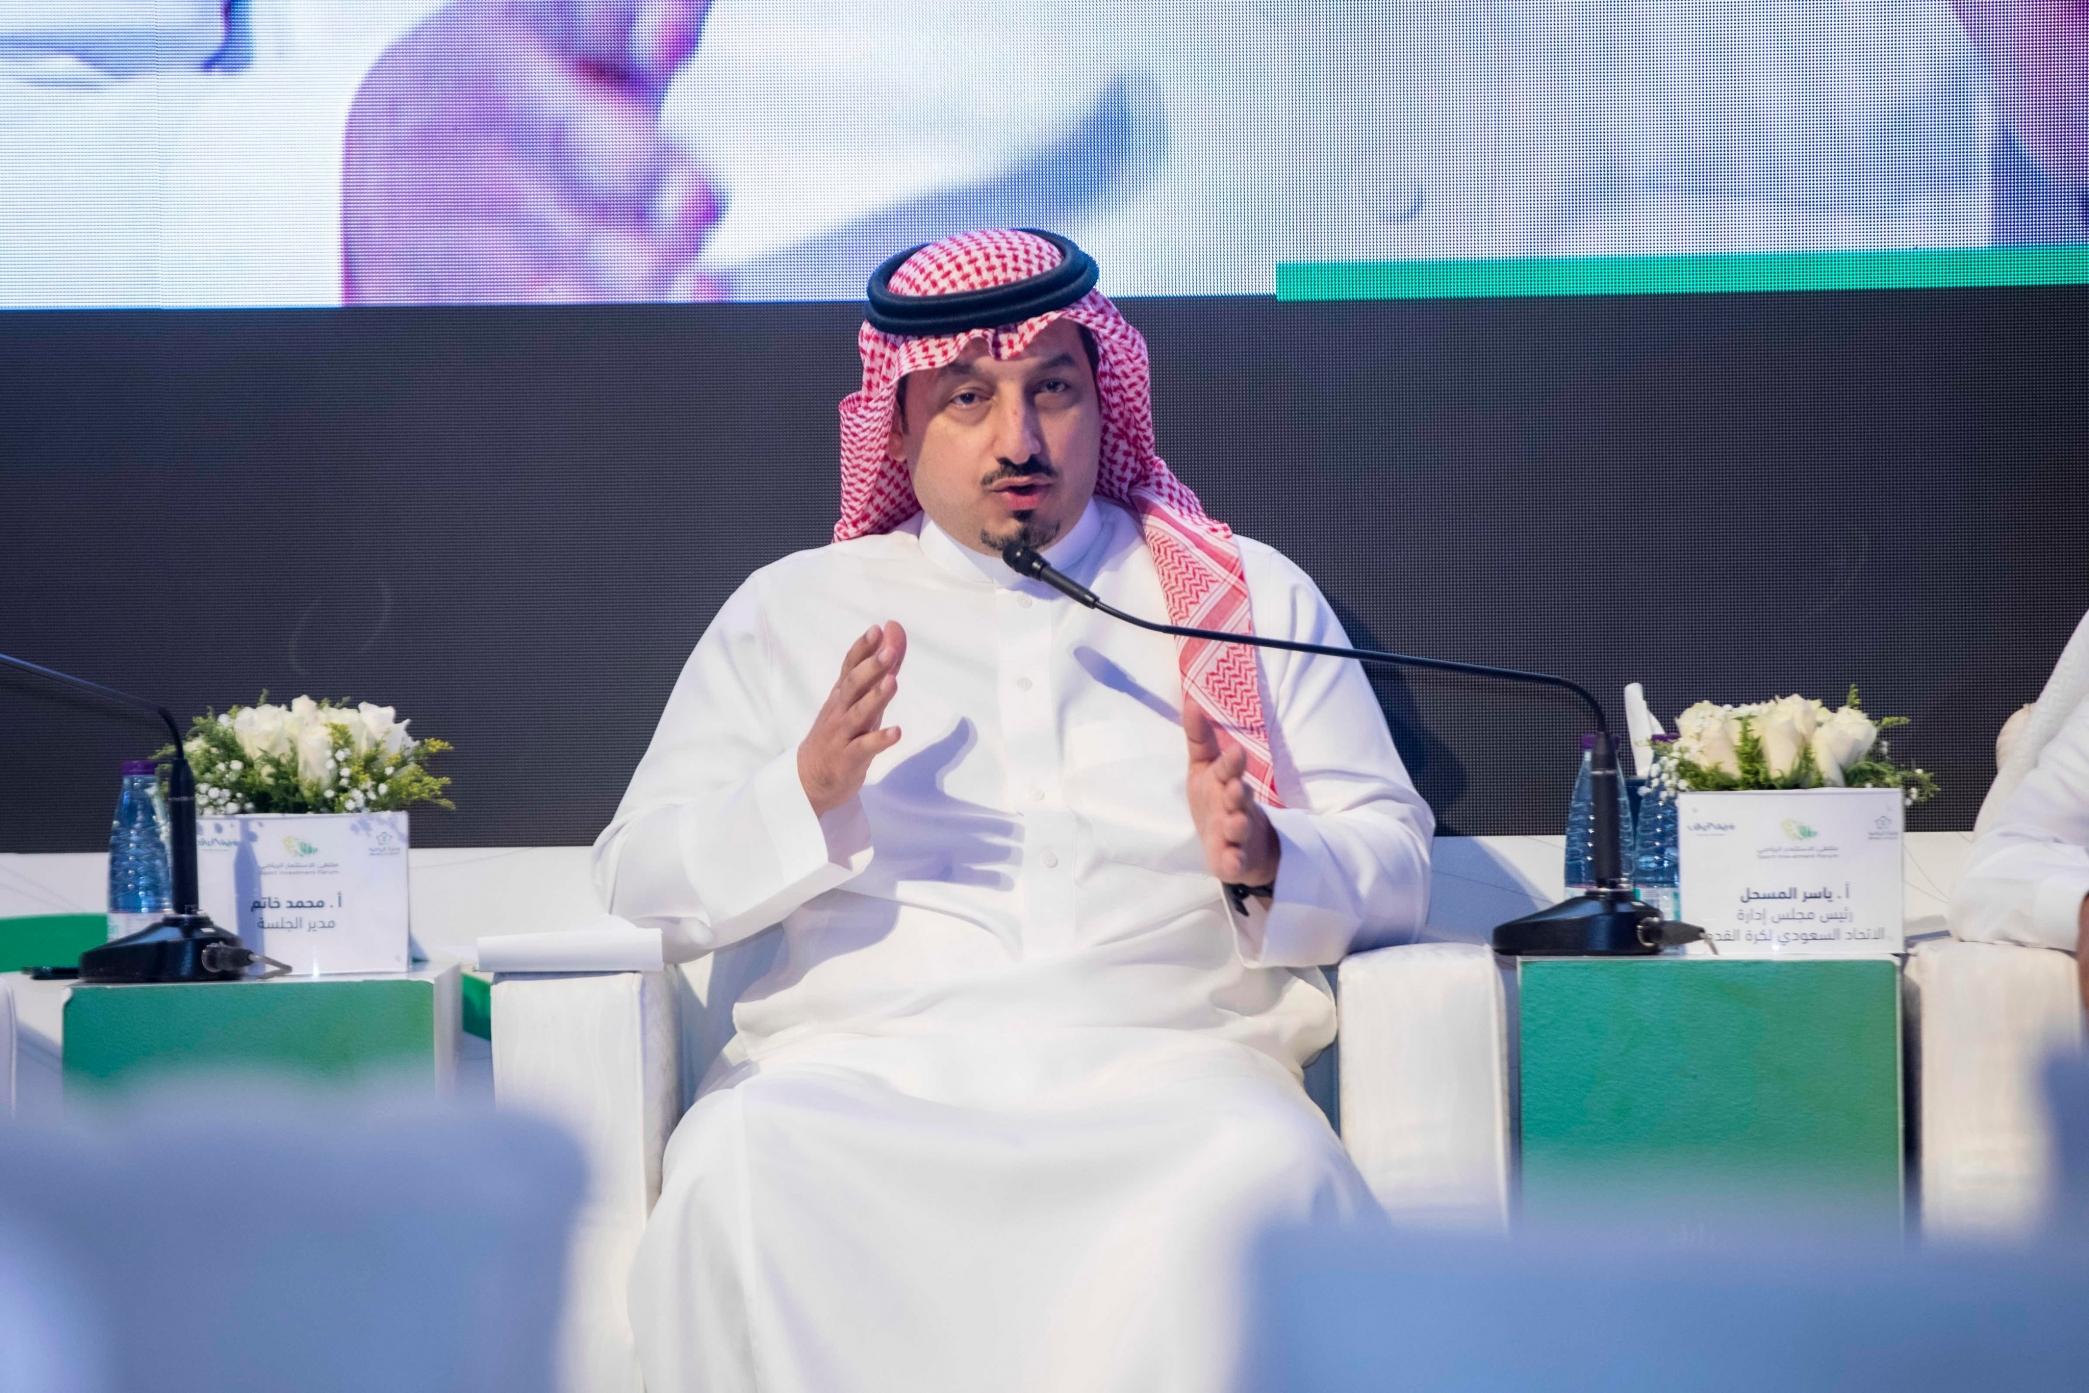 ياسر المسحل: الدعم اللامحدود ساهم في استضافة السعودية لفعاليات كبرى